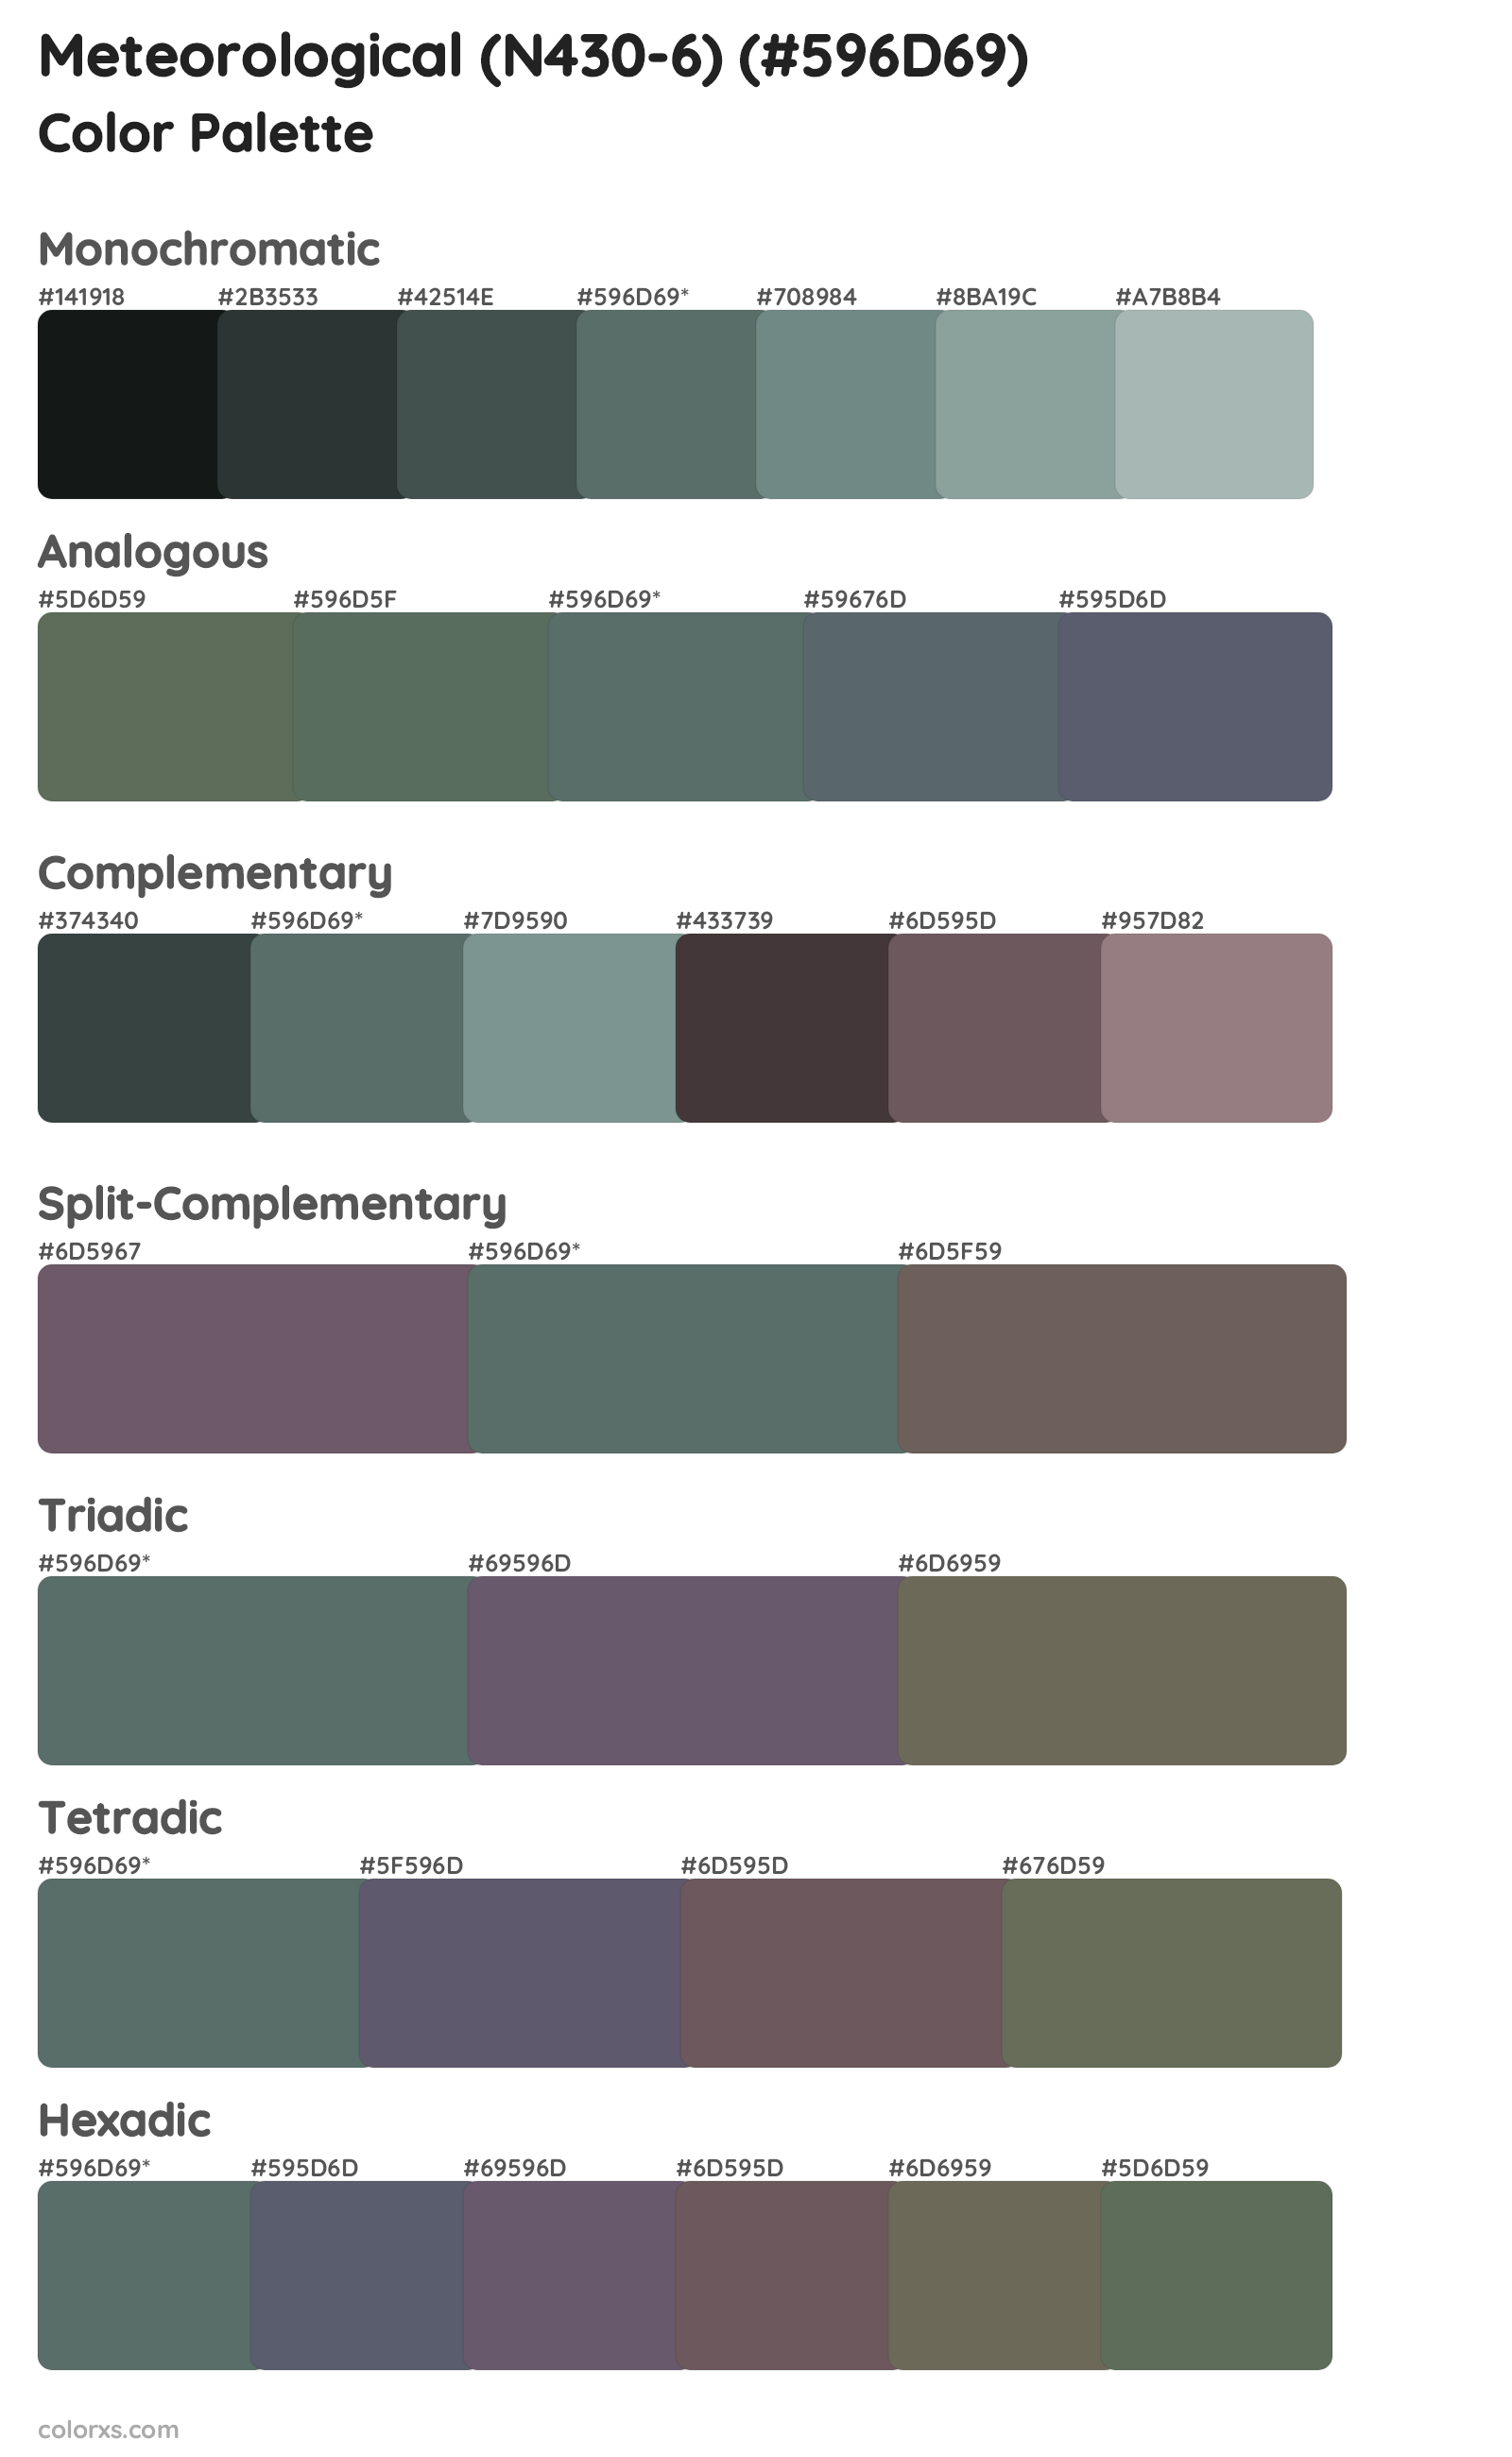 Meteorological (N430-6) Color Scheme Palettes